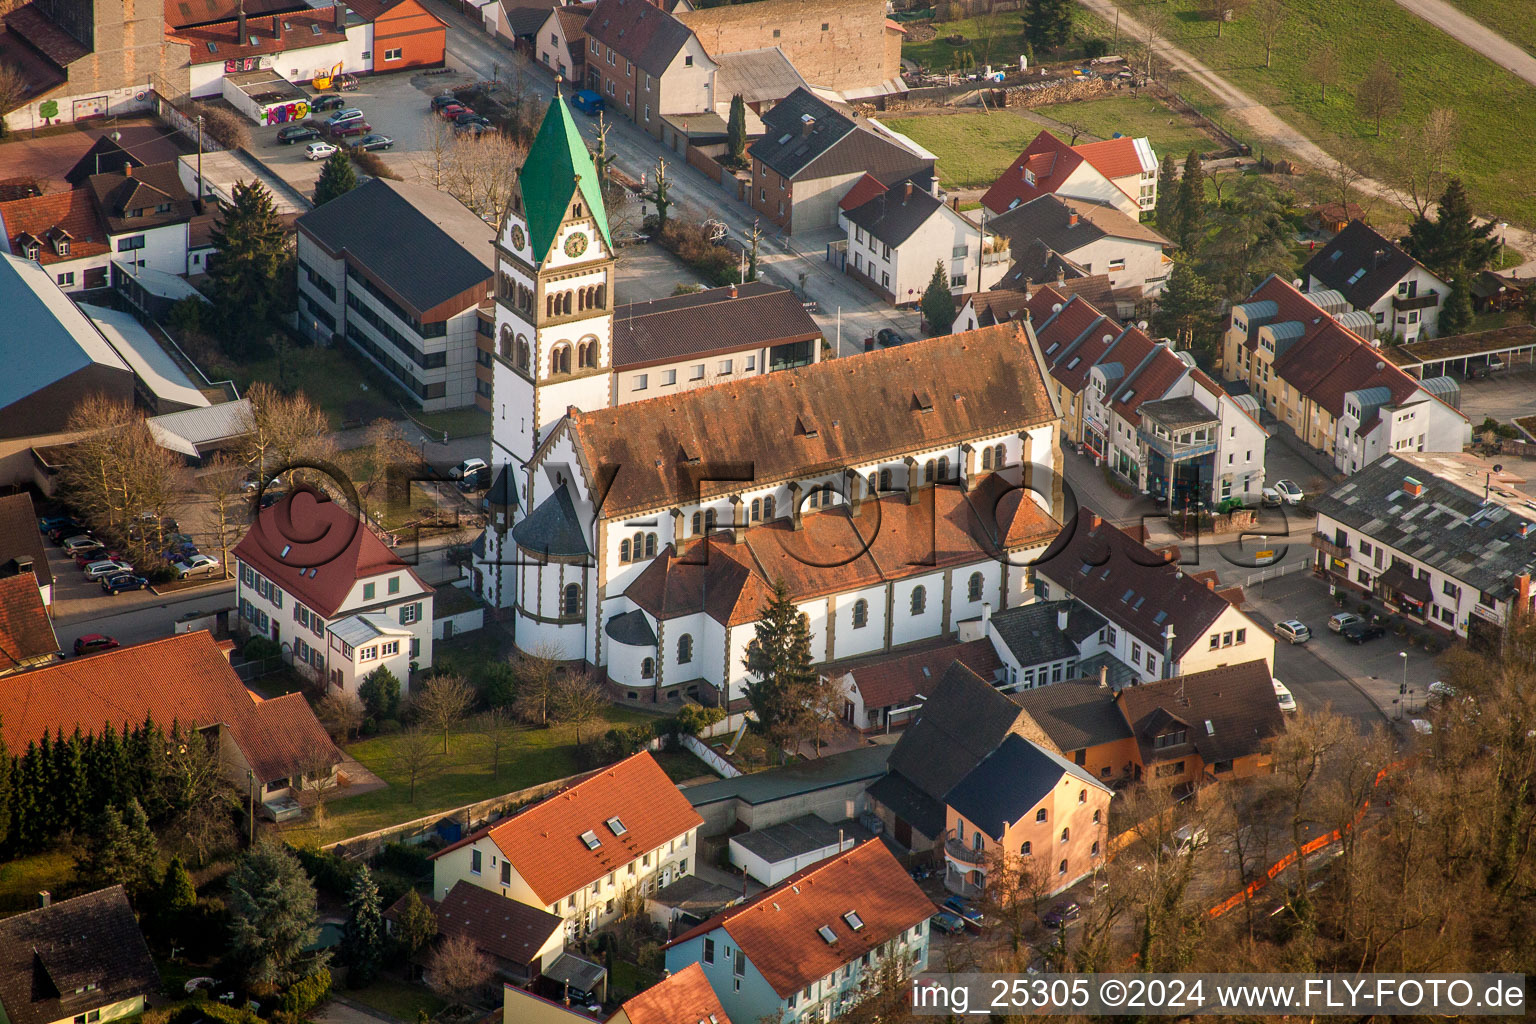 Vue aérienne de Bâtiment d'église catholique au centre du village à Ketsch dans le département Bade-Wurtemberg, Allemagne